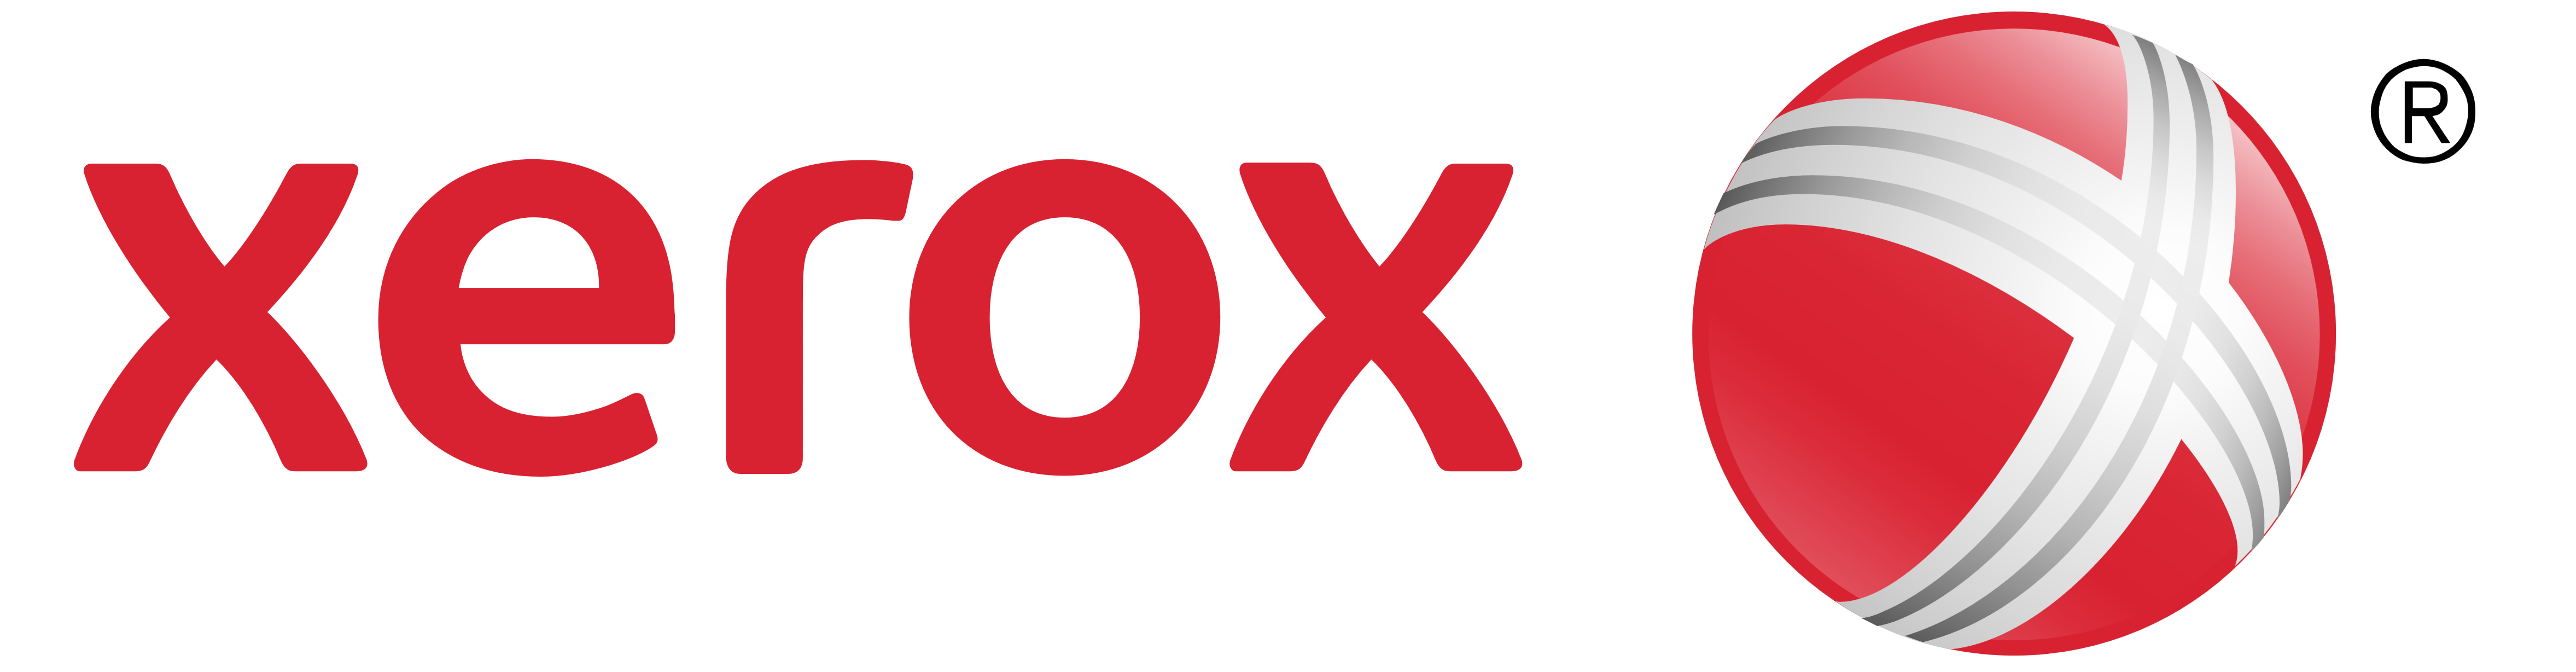 Xerox_logo_PNG-HD